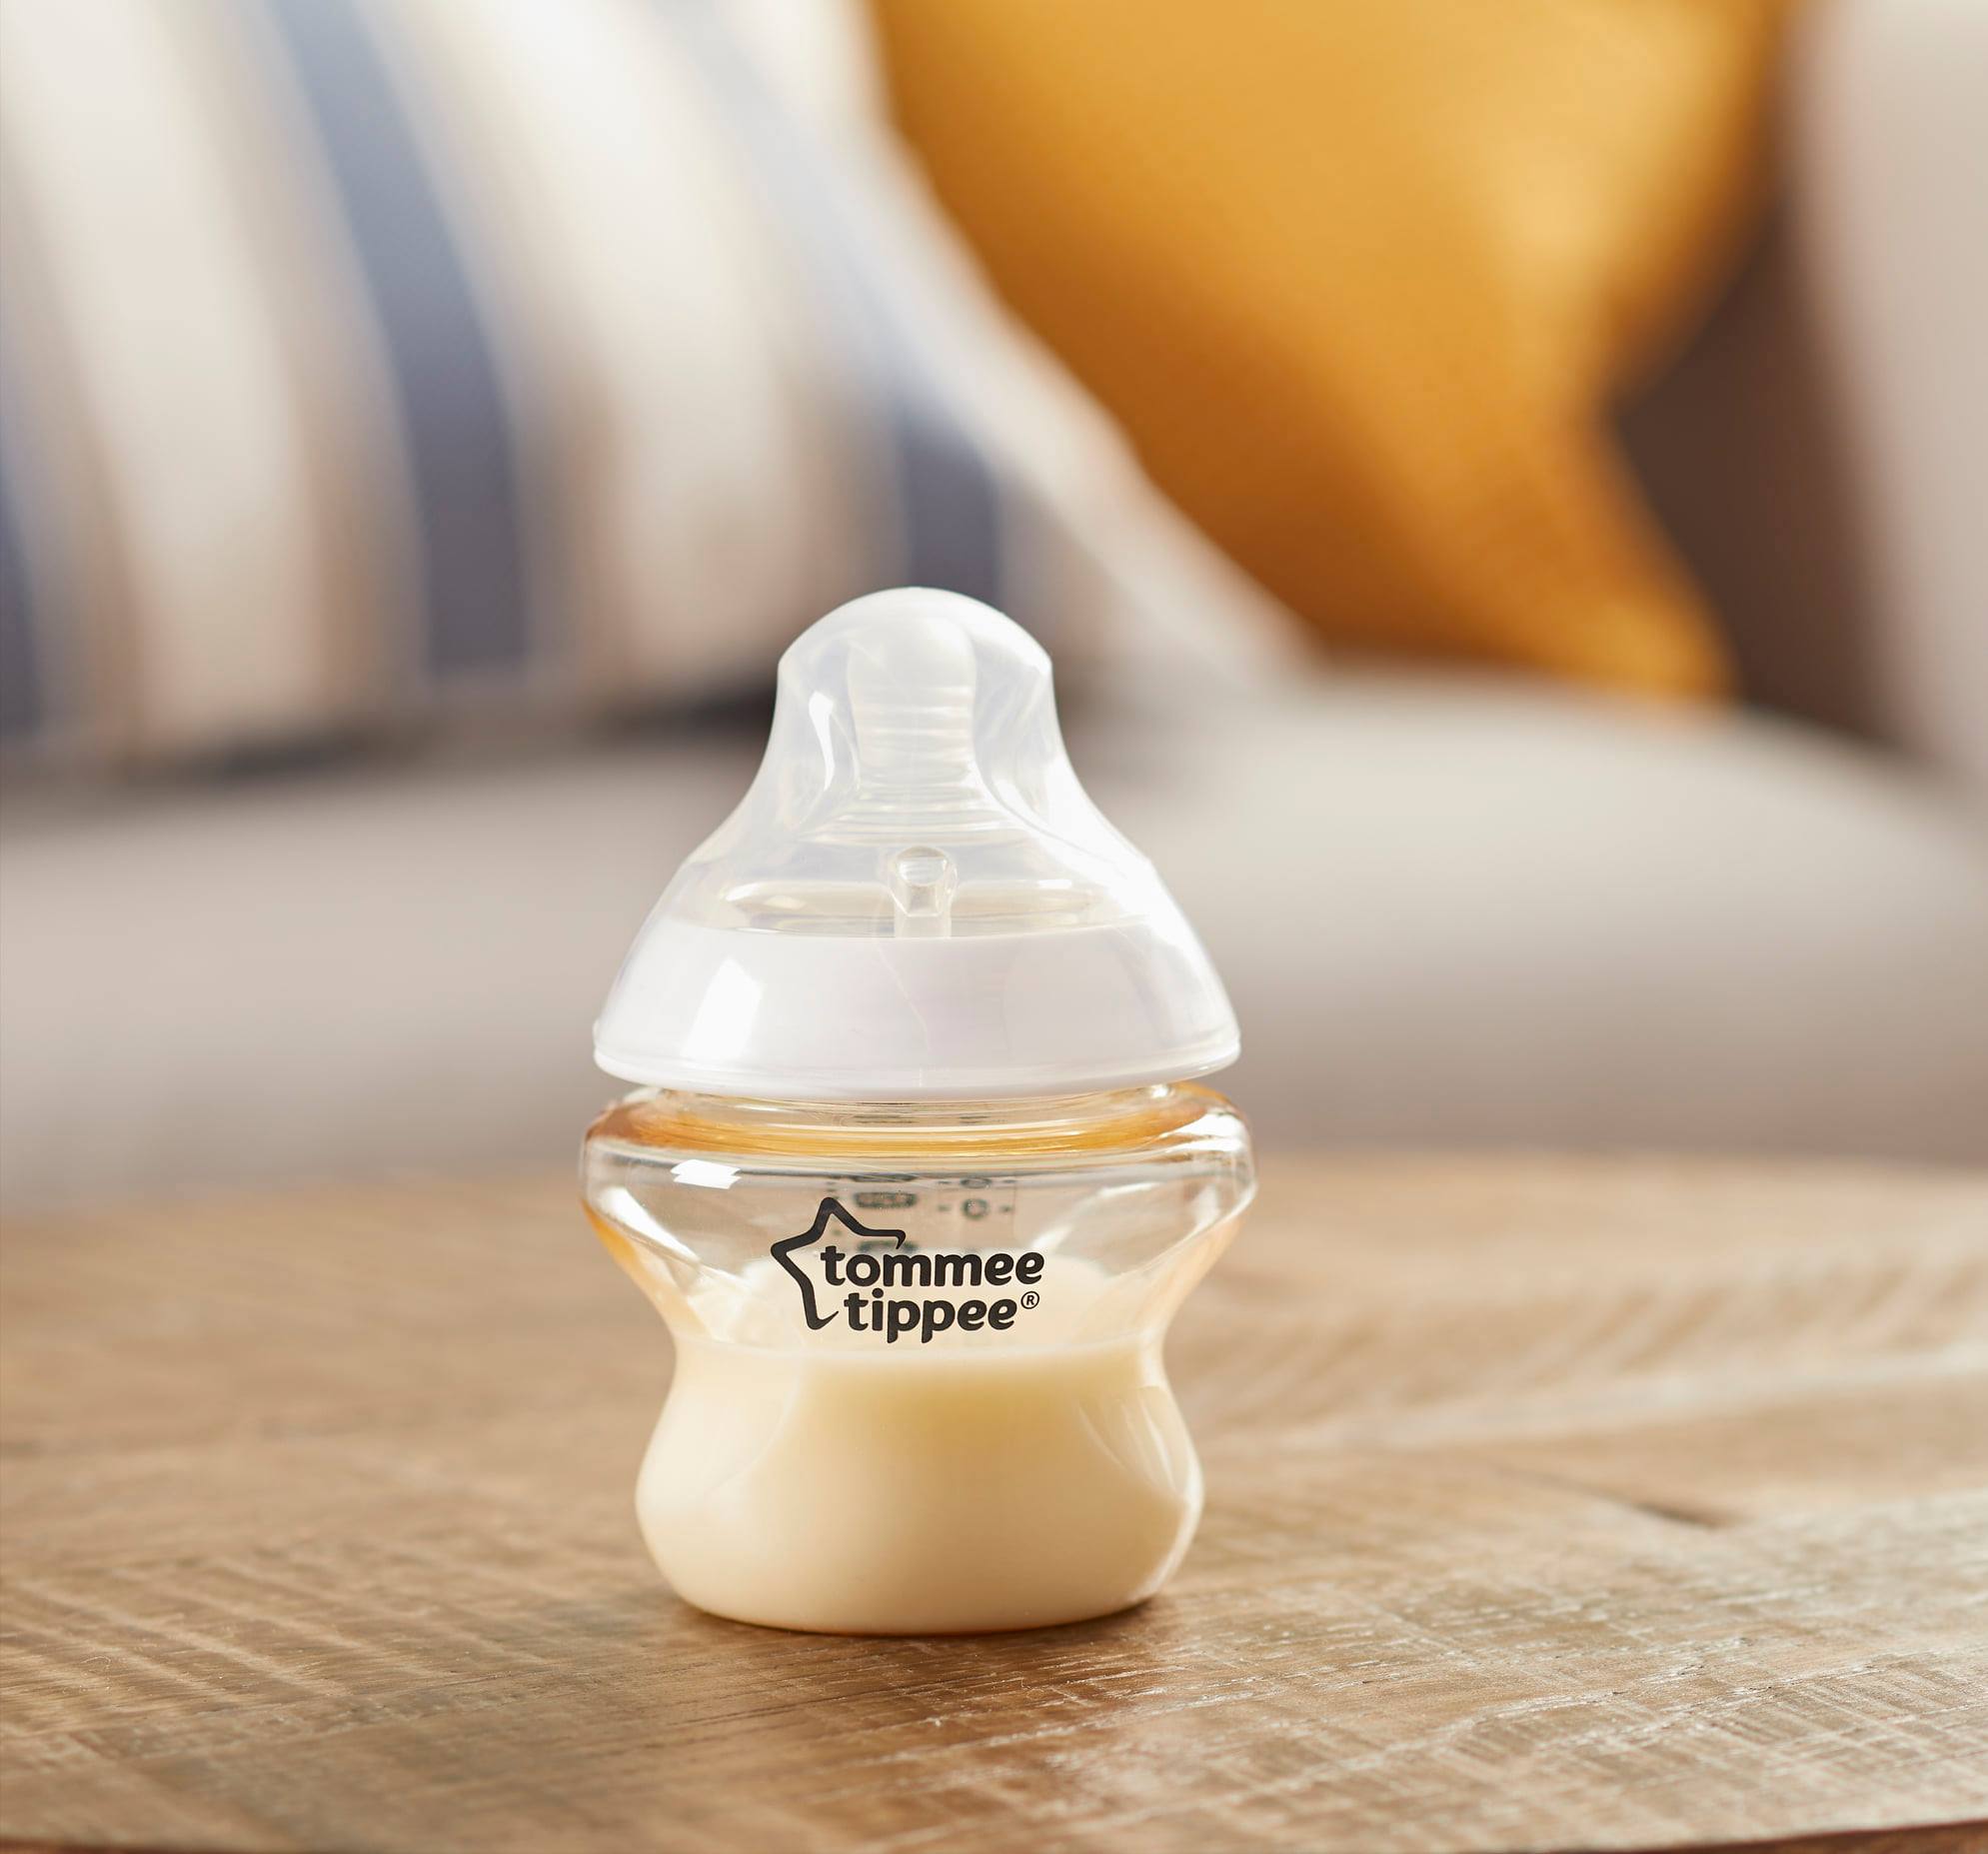 COMBO 2 Bình Sữa Tommee Tippee PPSU Ty Siêu Mềm Tự Nhiên 150ml TẶNG 1 Túi Nước Rửa Bình Sữa Organic Lamoon 450ml